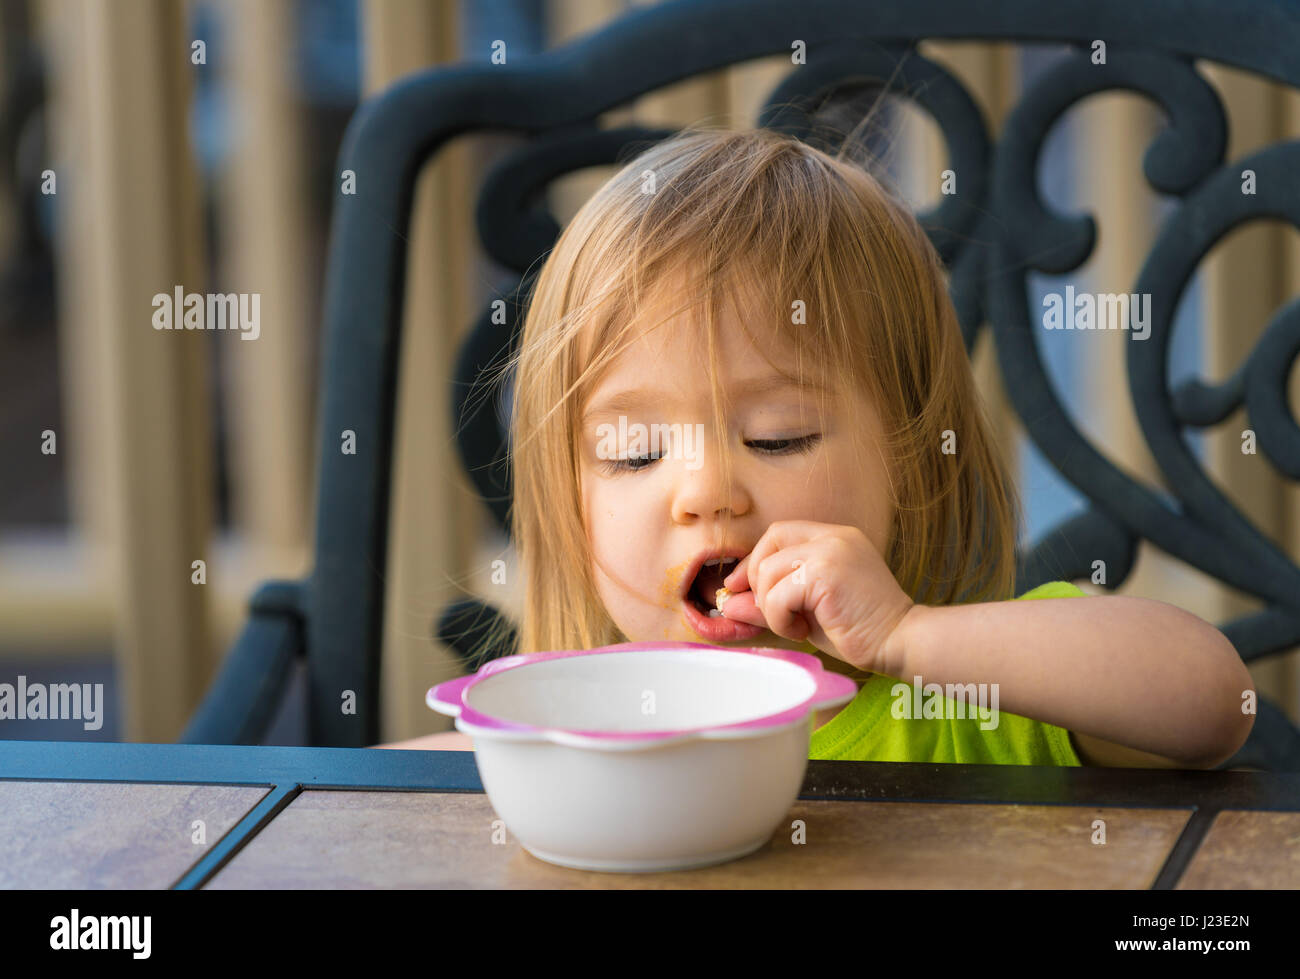 Baby Girl, tout-petit enfant de manger avec les mains et les doigts de la cuvette on outdoor table Banque D'Images